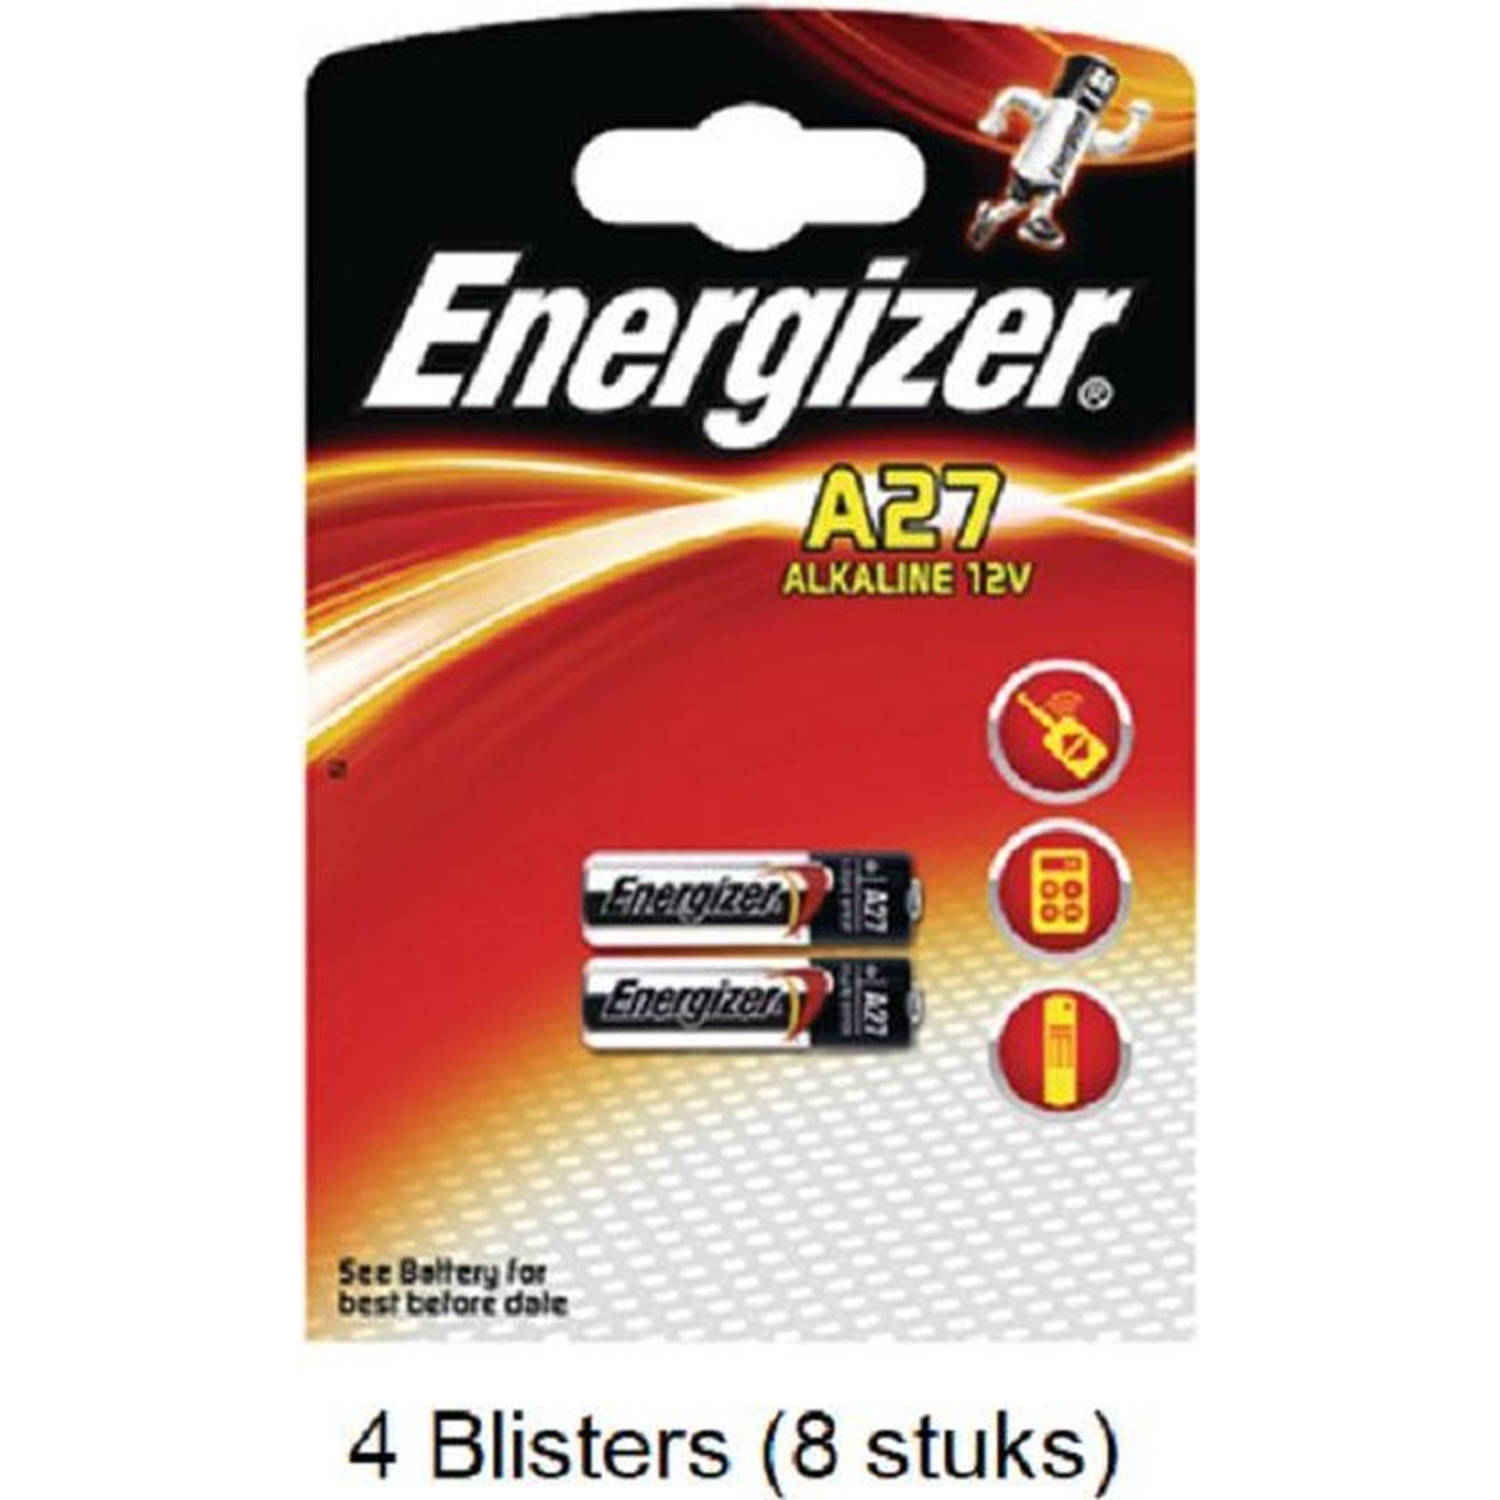 8 stuks (4 blisters a 2 stuks) Energizer Alkaline LR27 / A27 12v